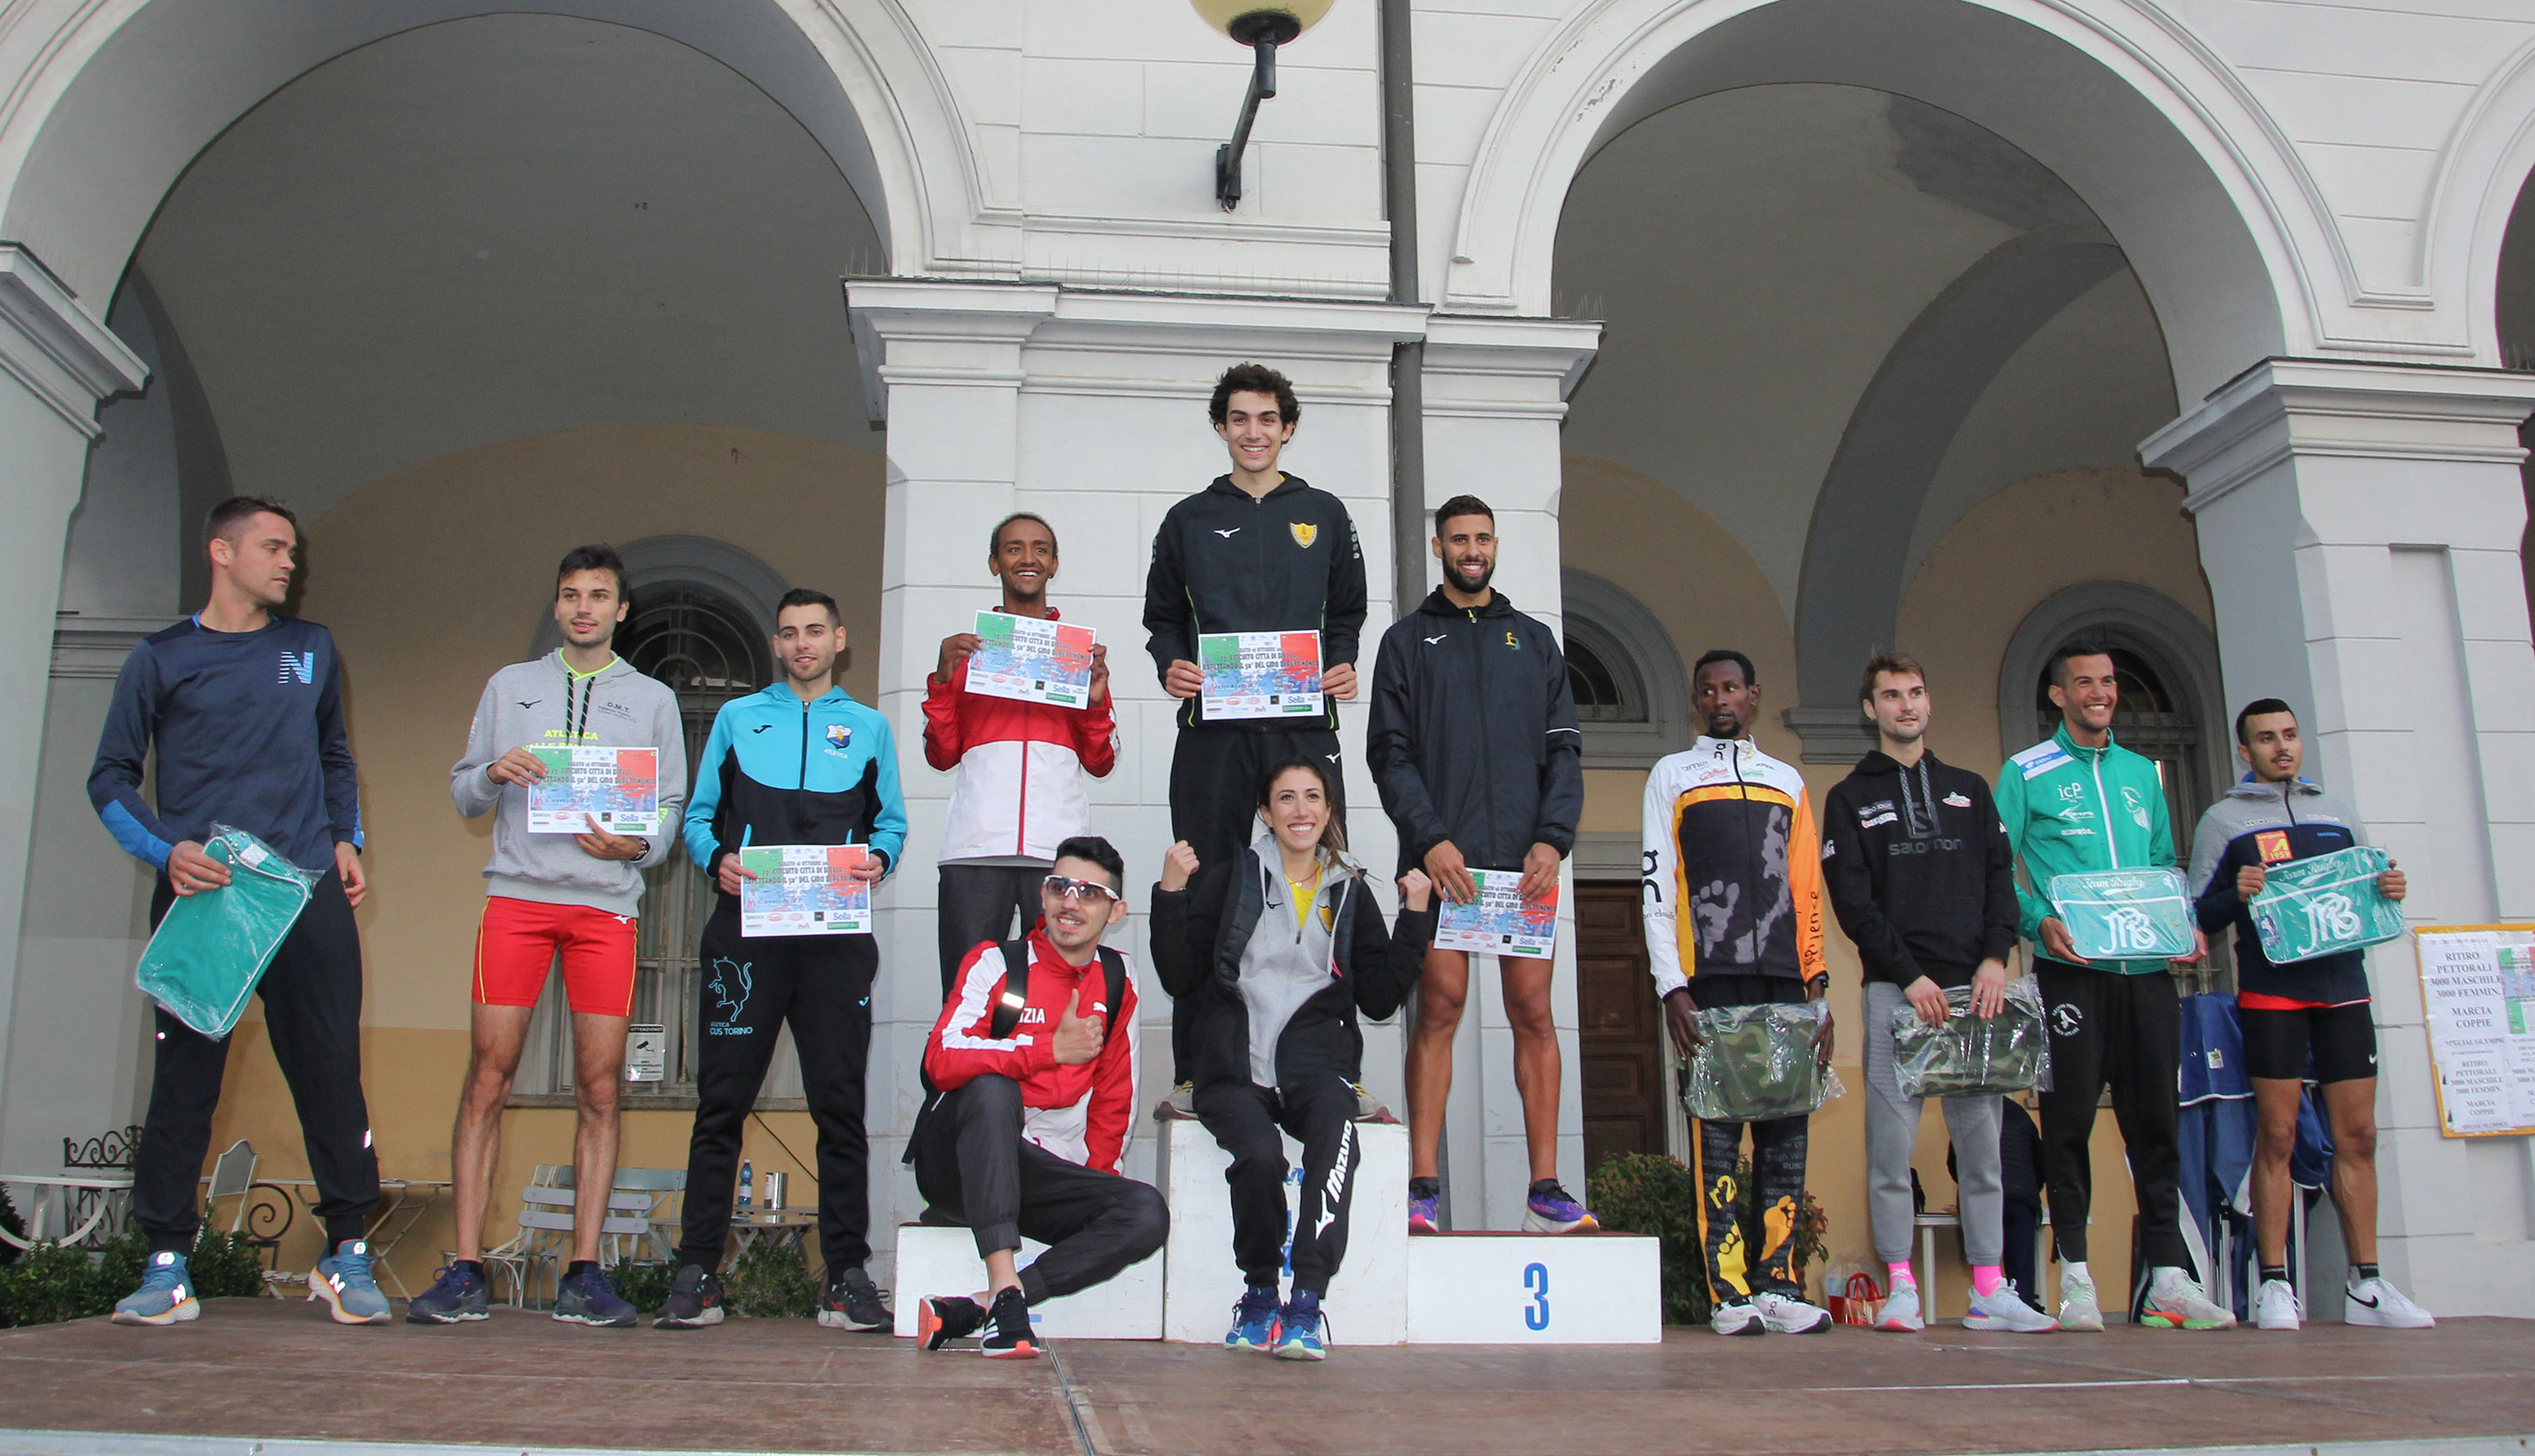 La premiazione della gara dei 3000 metri maschili del circuito città di Biella